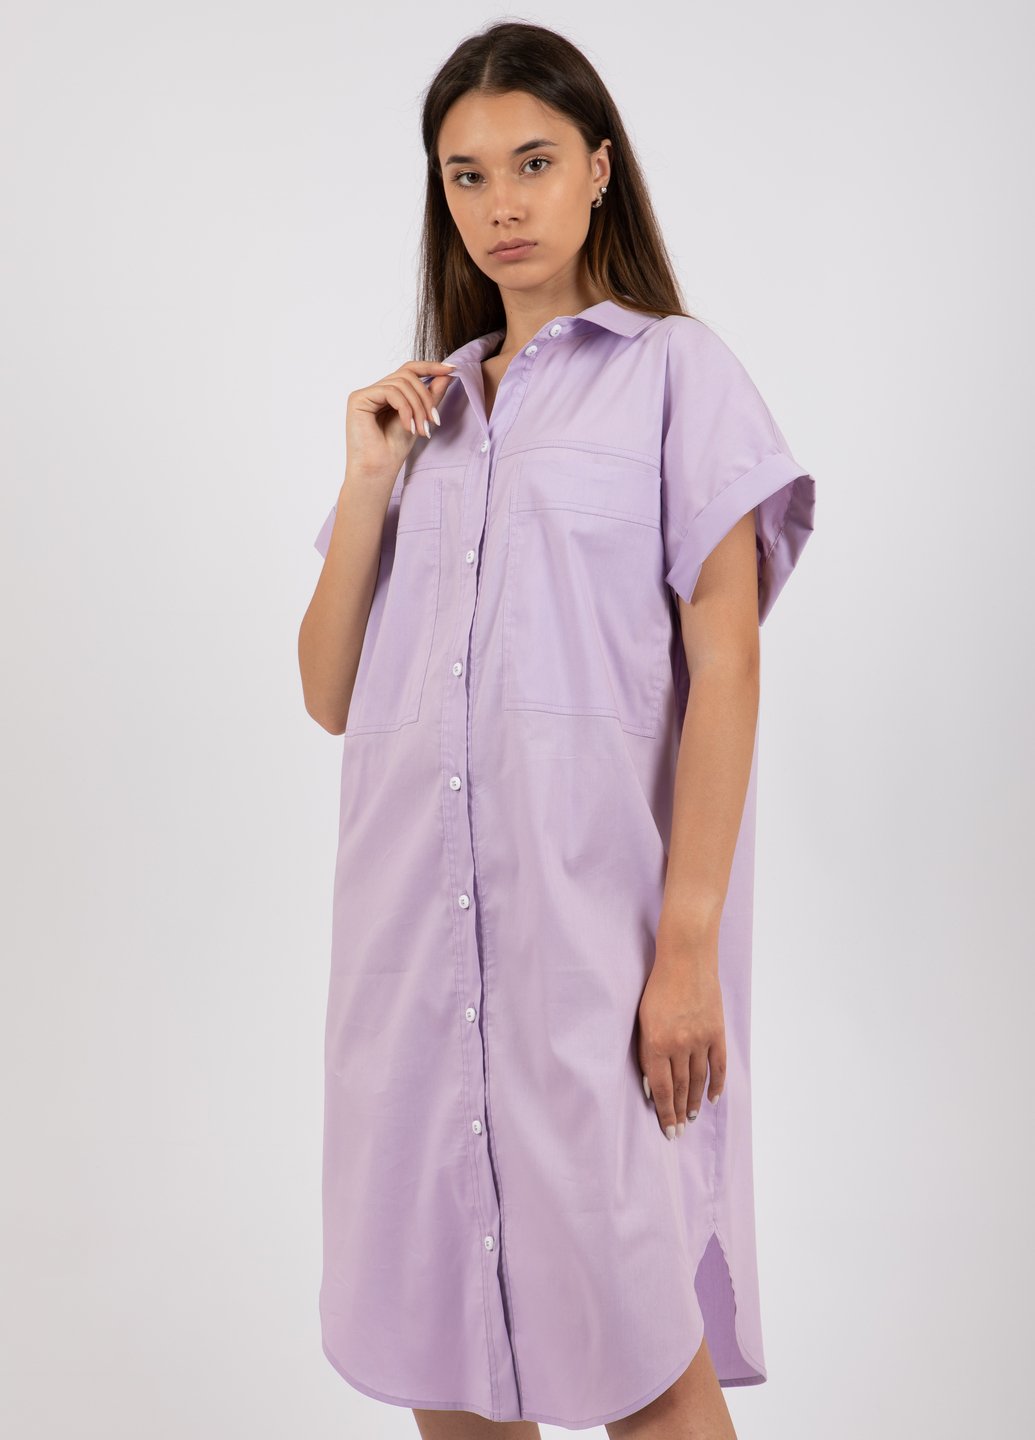 Купить Оверсайз хлопковое платье-рубашка Merlini Руан 700000005 - Сиреневый, 42-44 в интернет-магазине